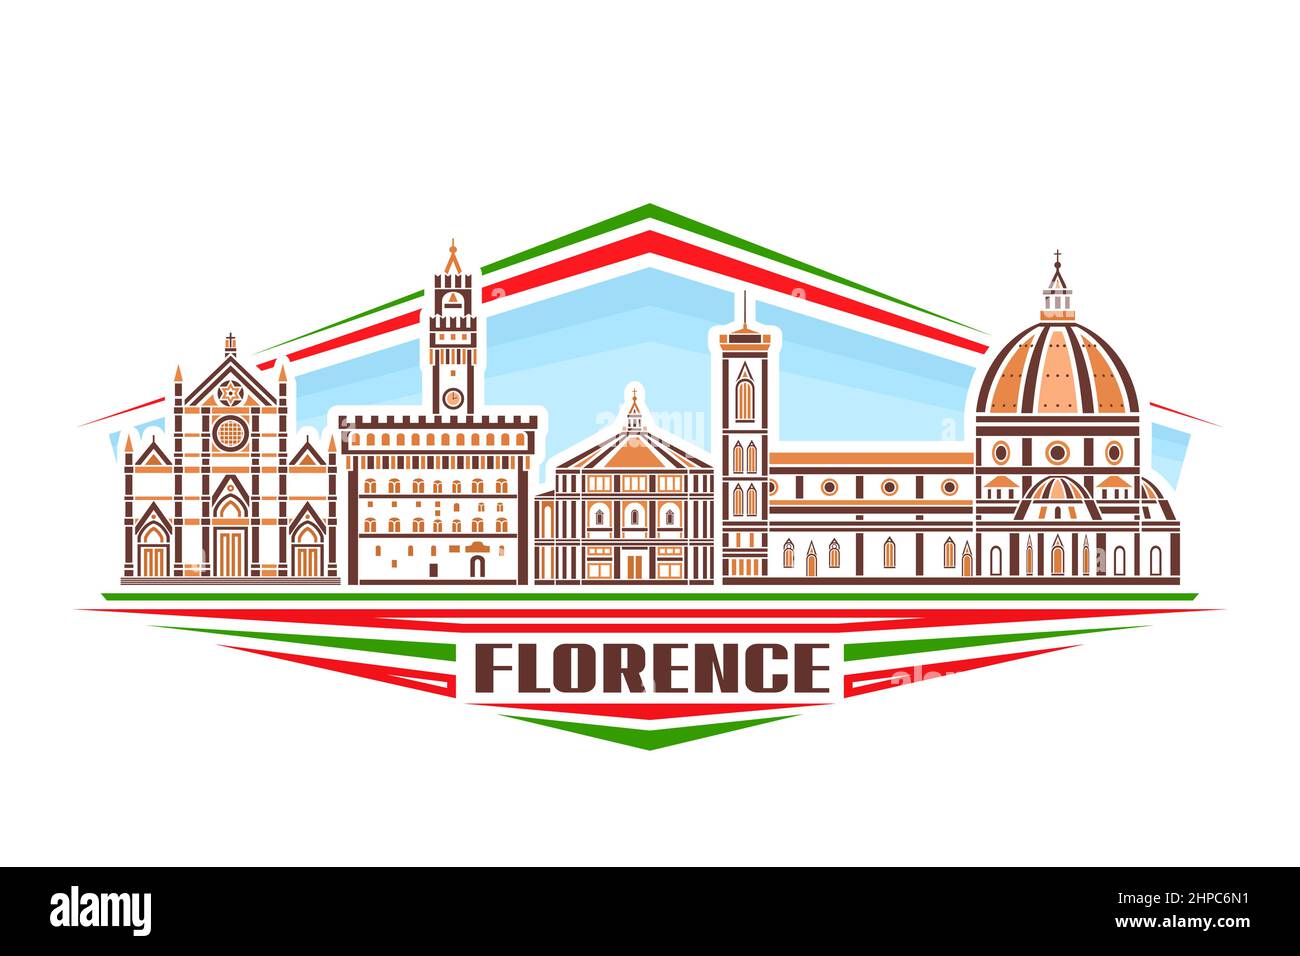 Illustration vectorielle de Florence, signe horizontal avec conception linéaire célèbre paysage de la ville de florence sur fond de ciel de jour, concept d'art urbain européen Illustration de Vecteur